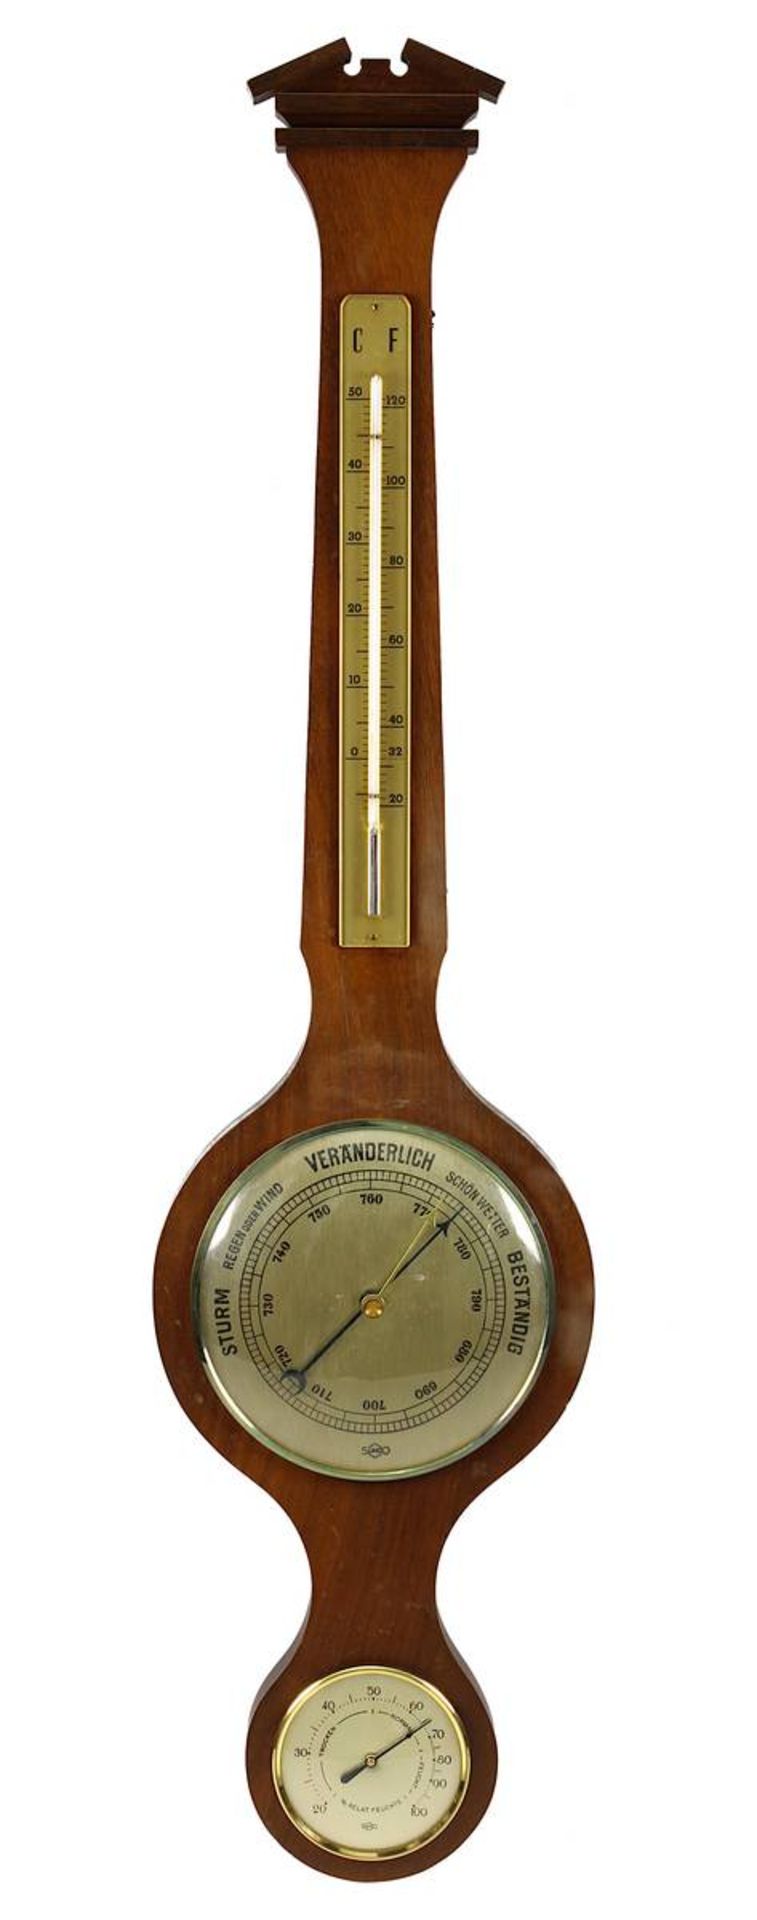 Sundo - Barometer, deutsch um 1960, Holzgestell, Thermometer mit Quecksilber, verschiedene Klimaanze